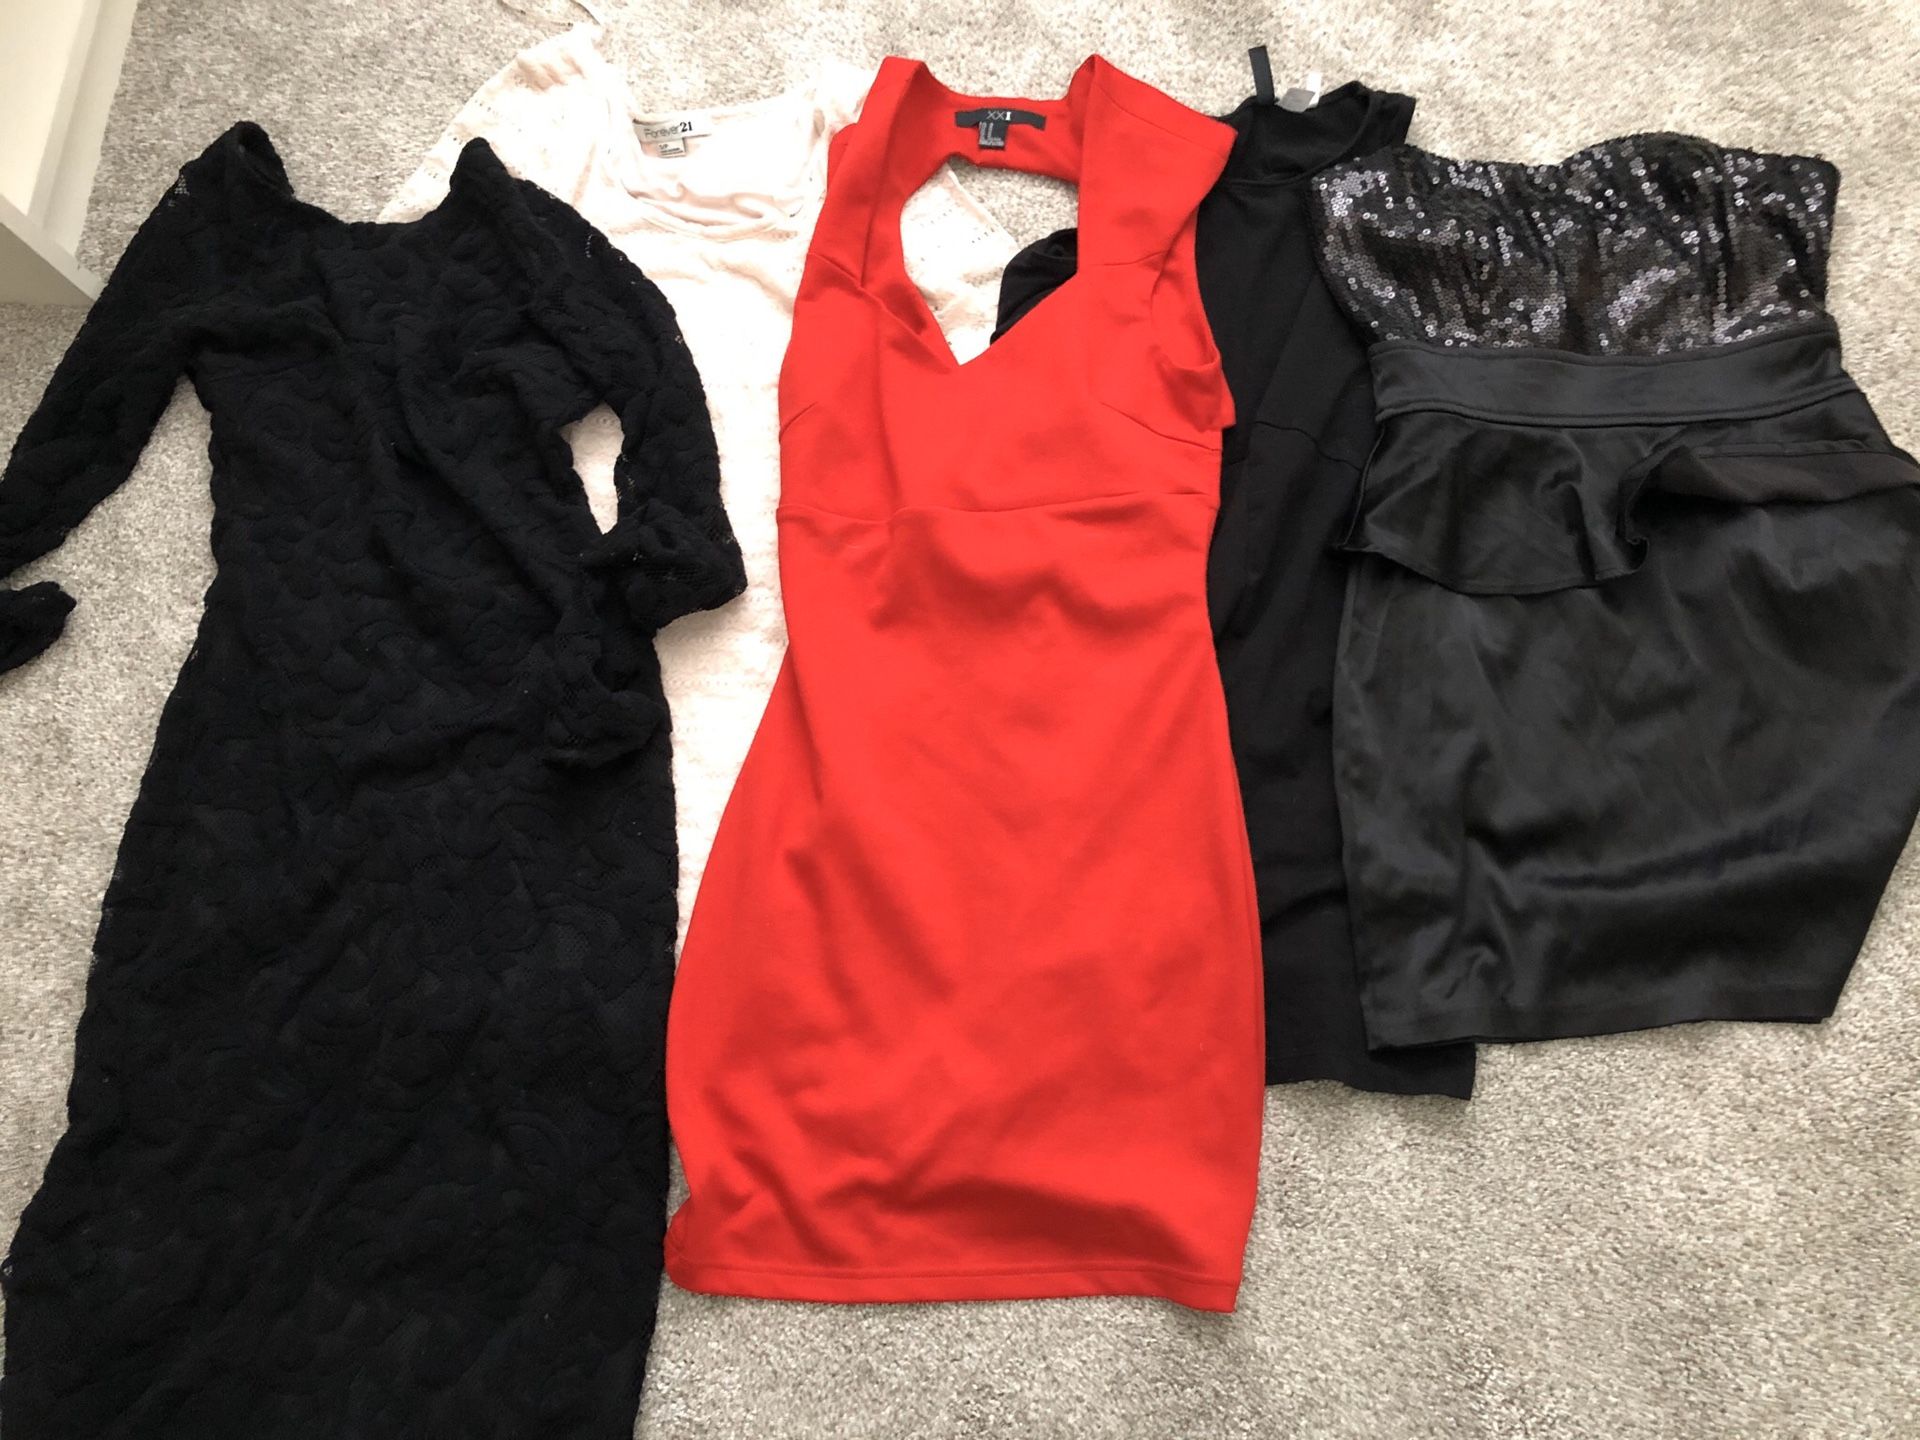 Clothing dresses bundle size small & medium